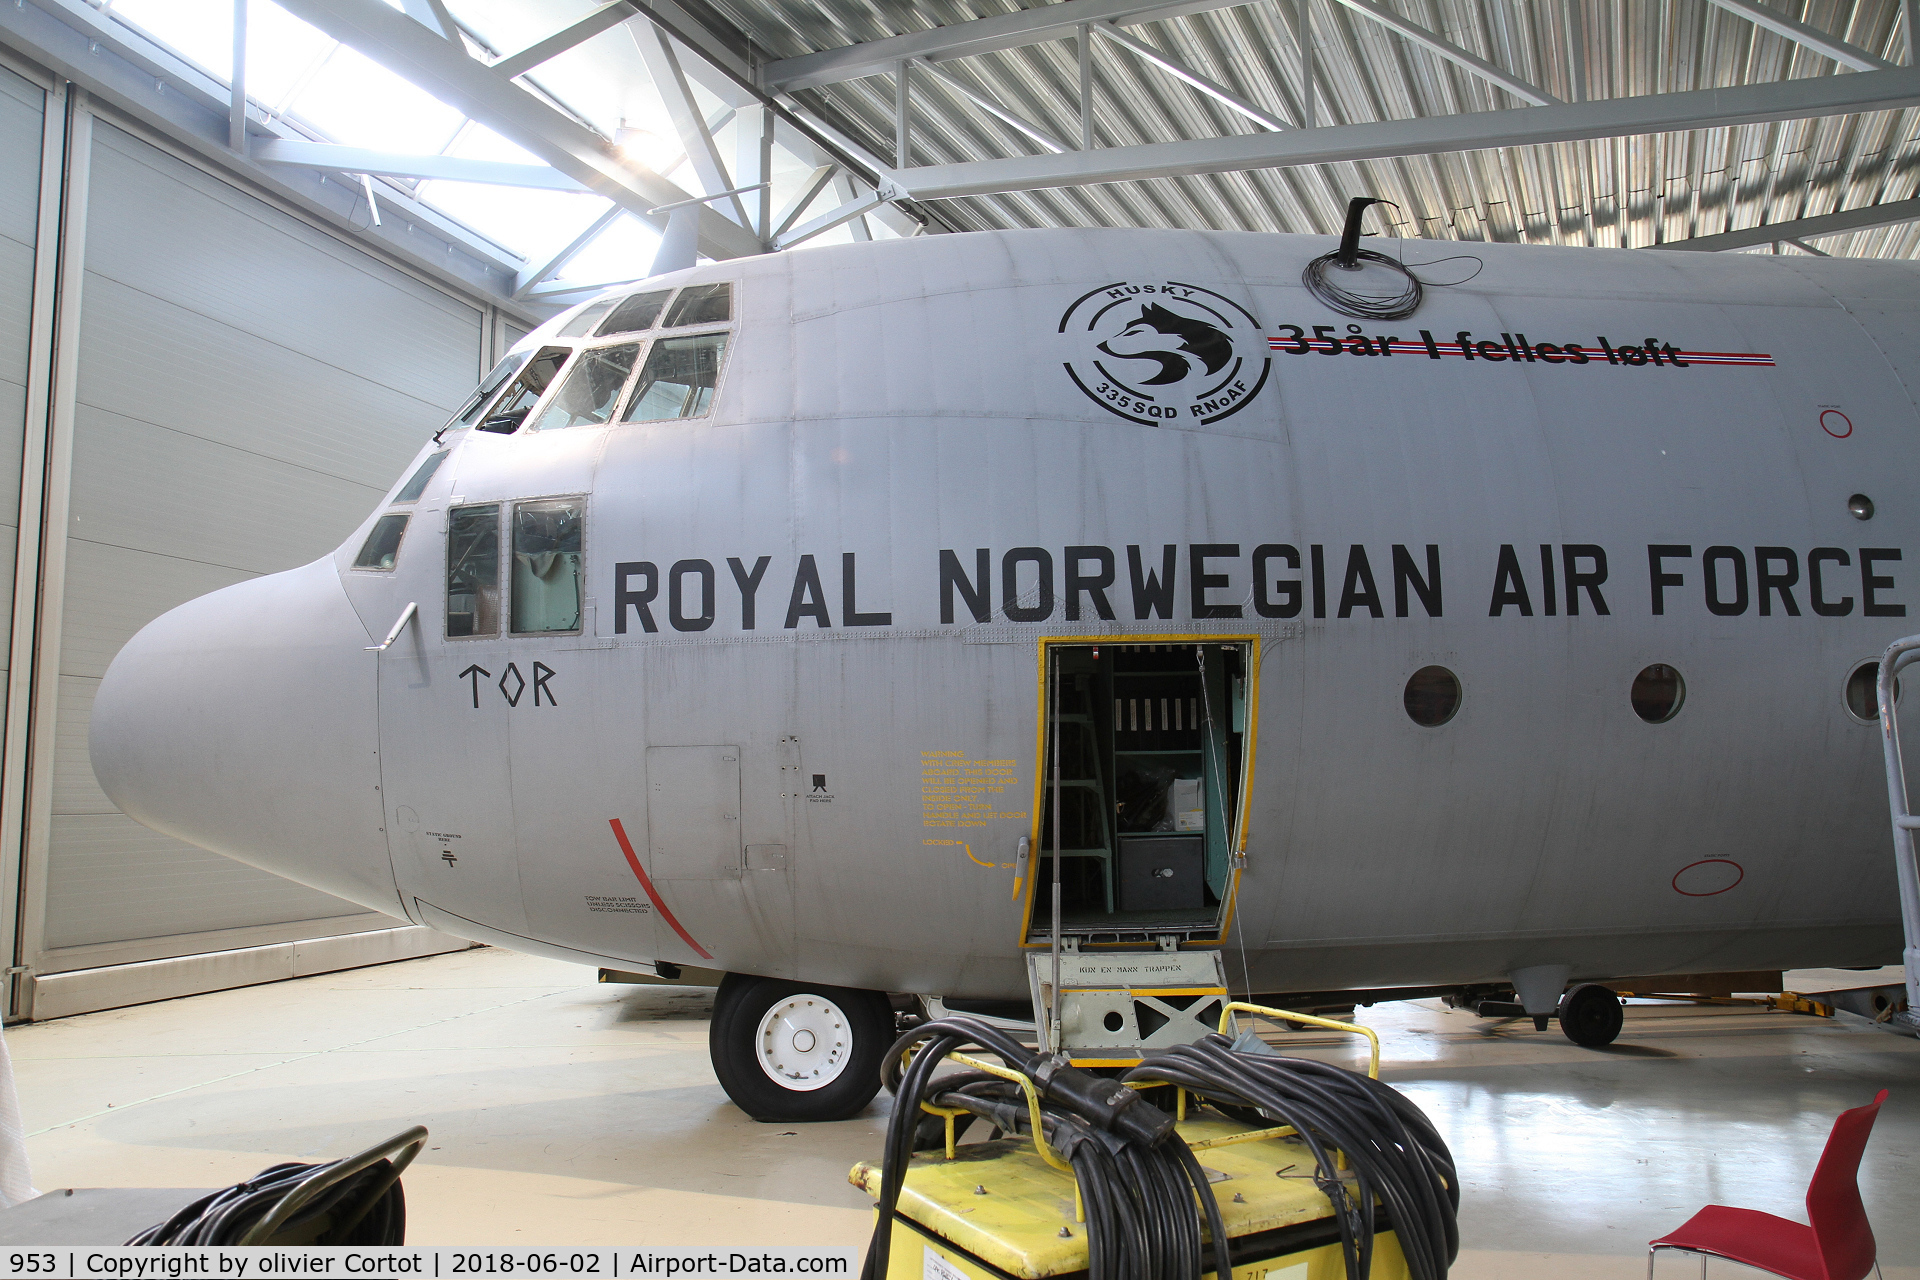 953, 1968 Lockheed C-130H Hercules C/N 382-4335, now in a museum